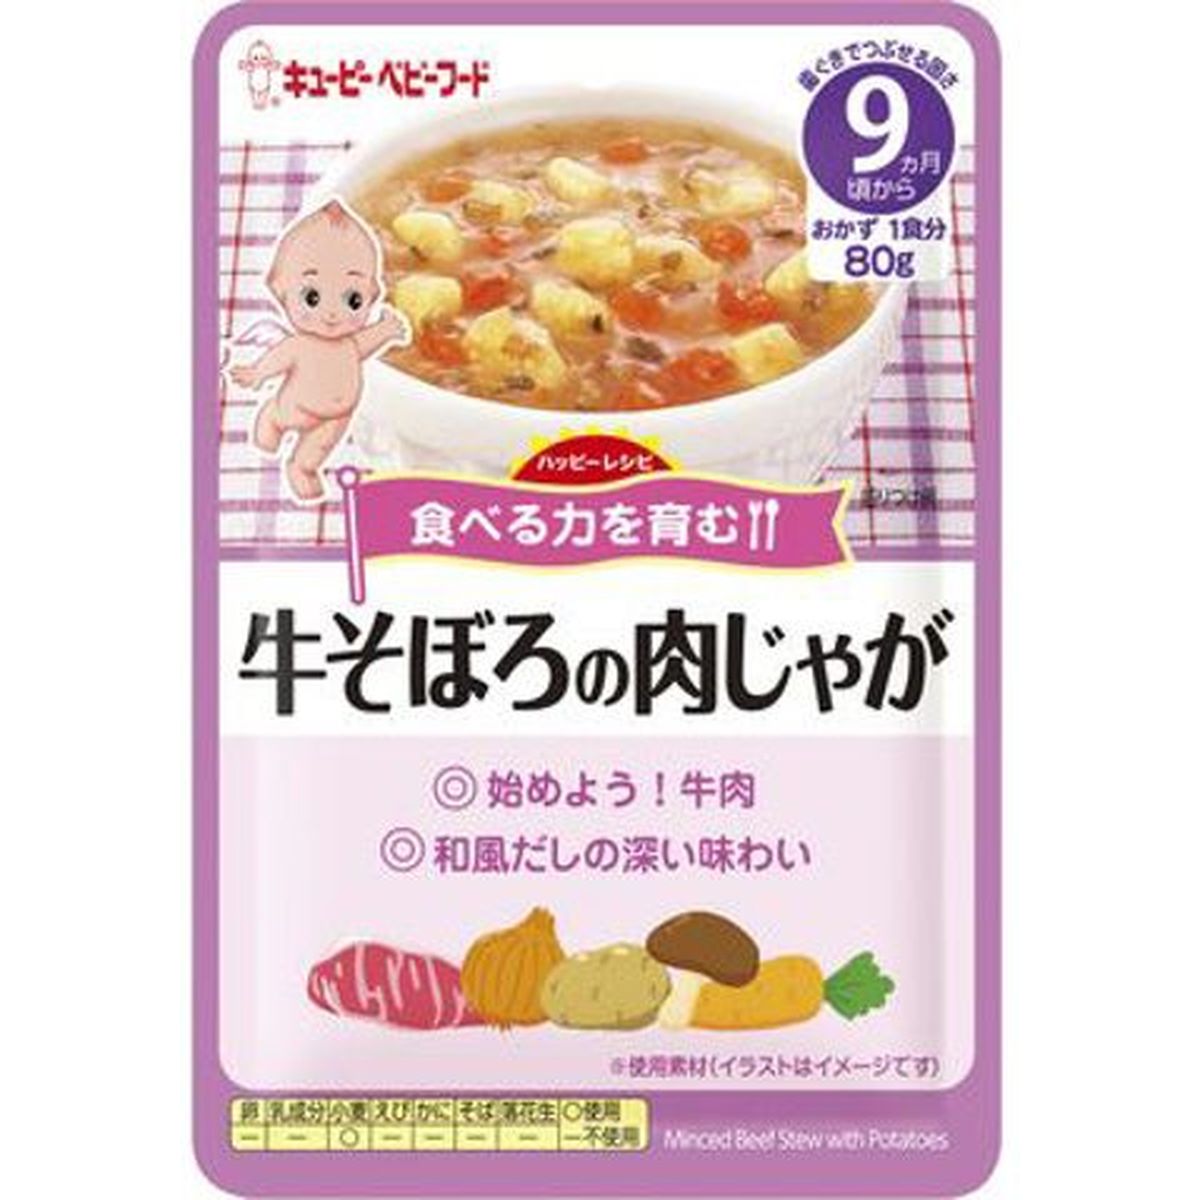 【48個入リ】キユーピー ハッピーレシピ 牛ソボロノ肉ジャガ 牛ソボロノ肉ジャカ 80g